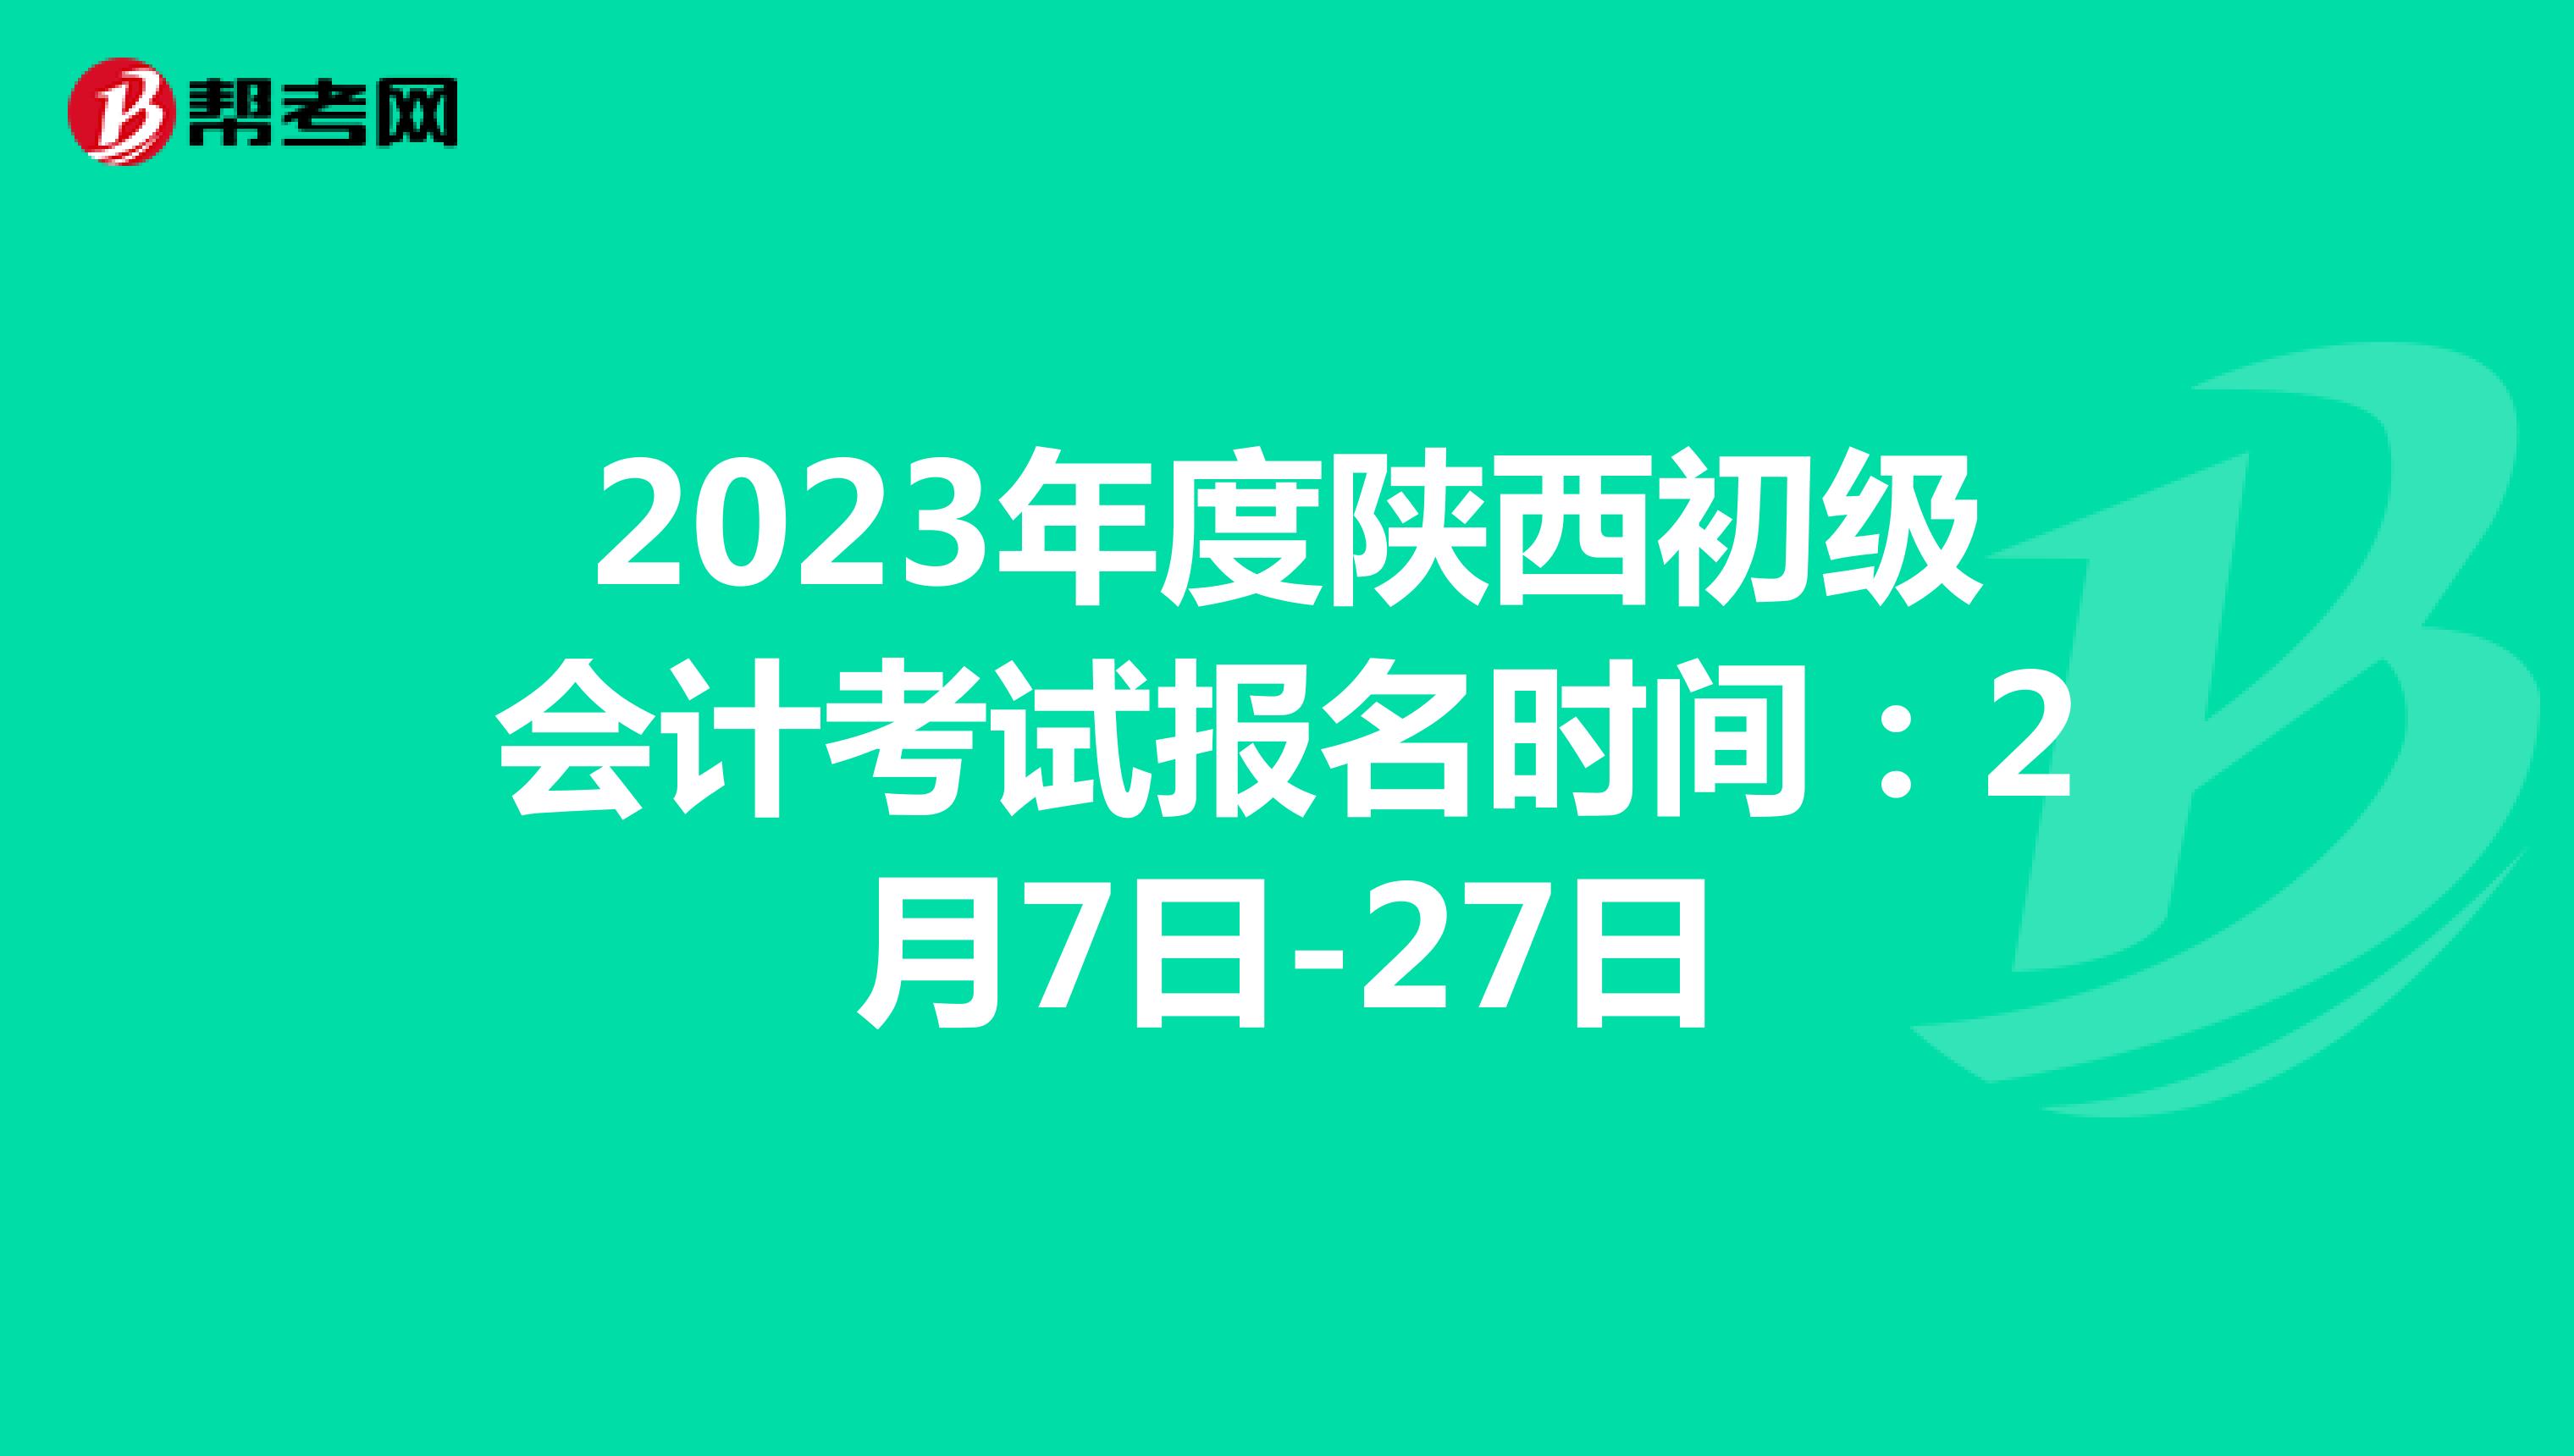 2023年度陕西初级会计考试报名时间：2月7日-27日